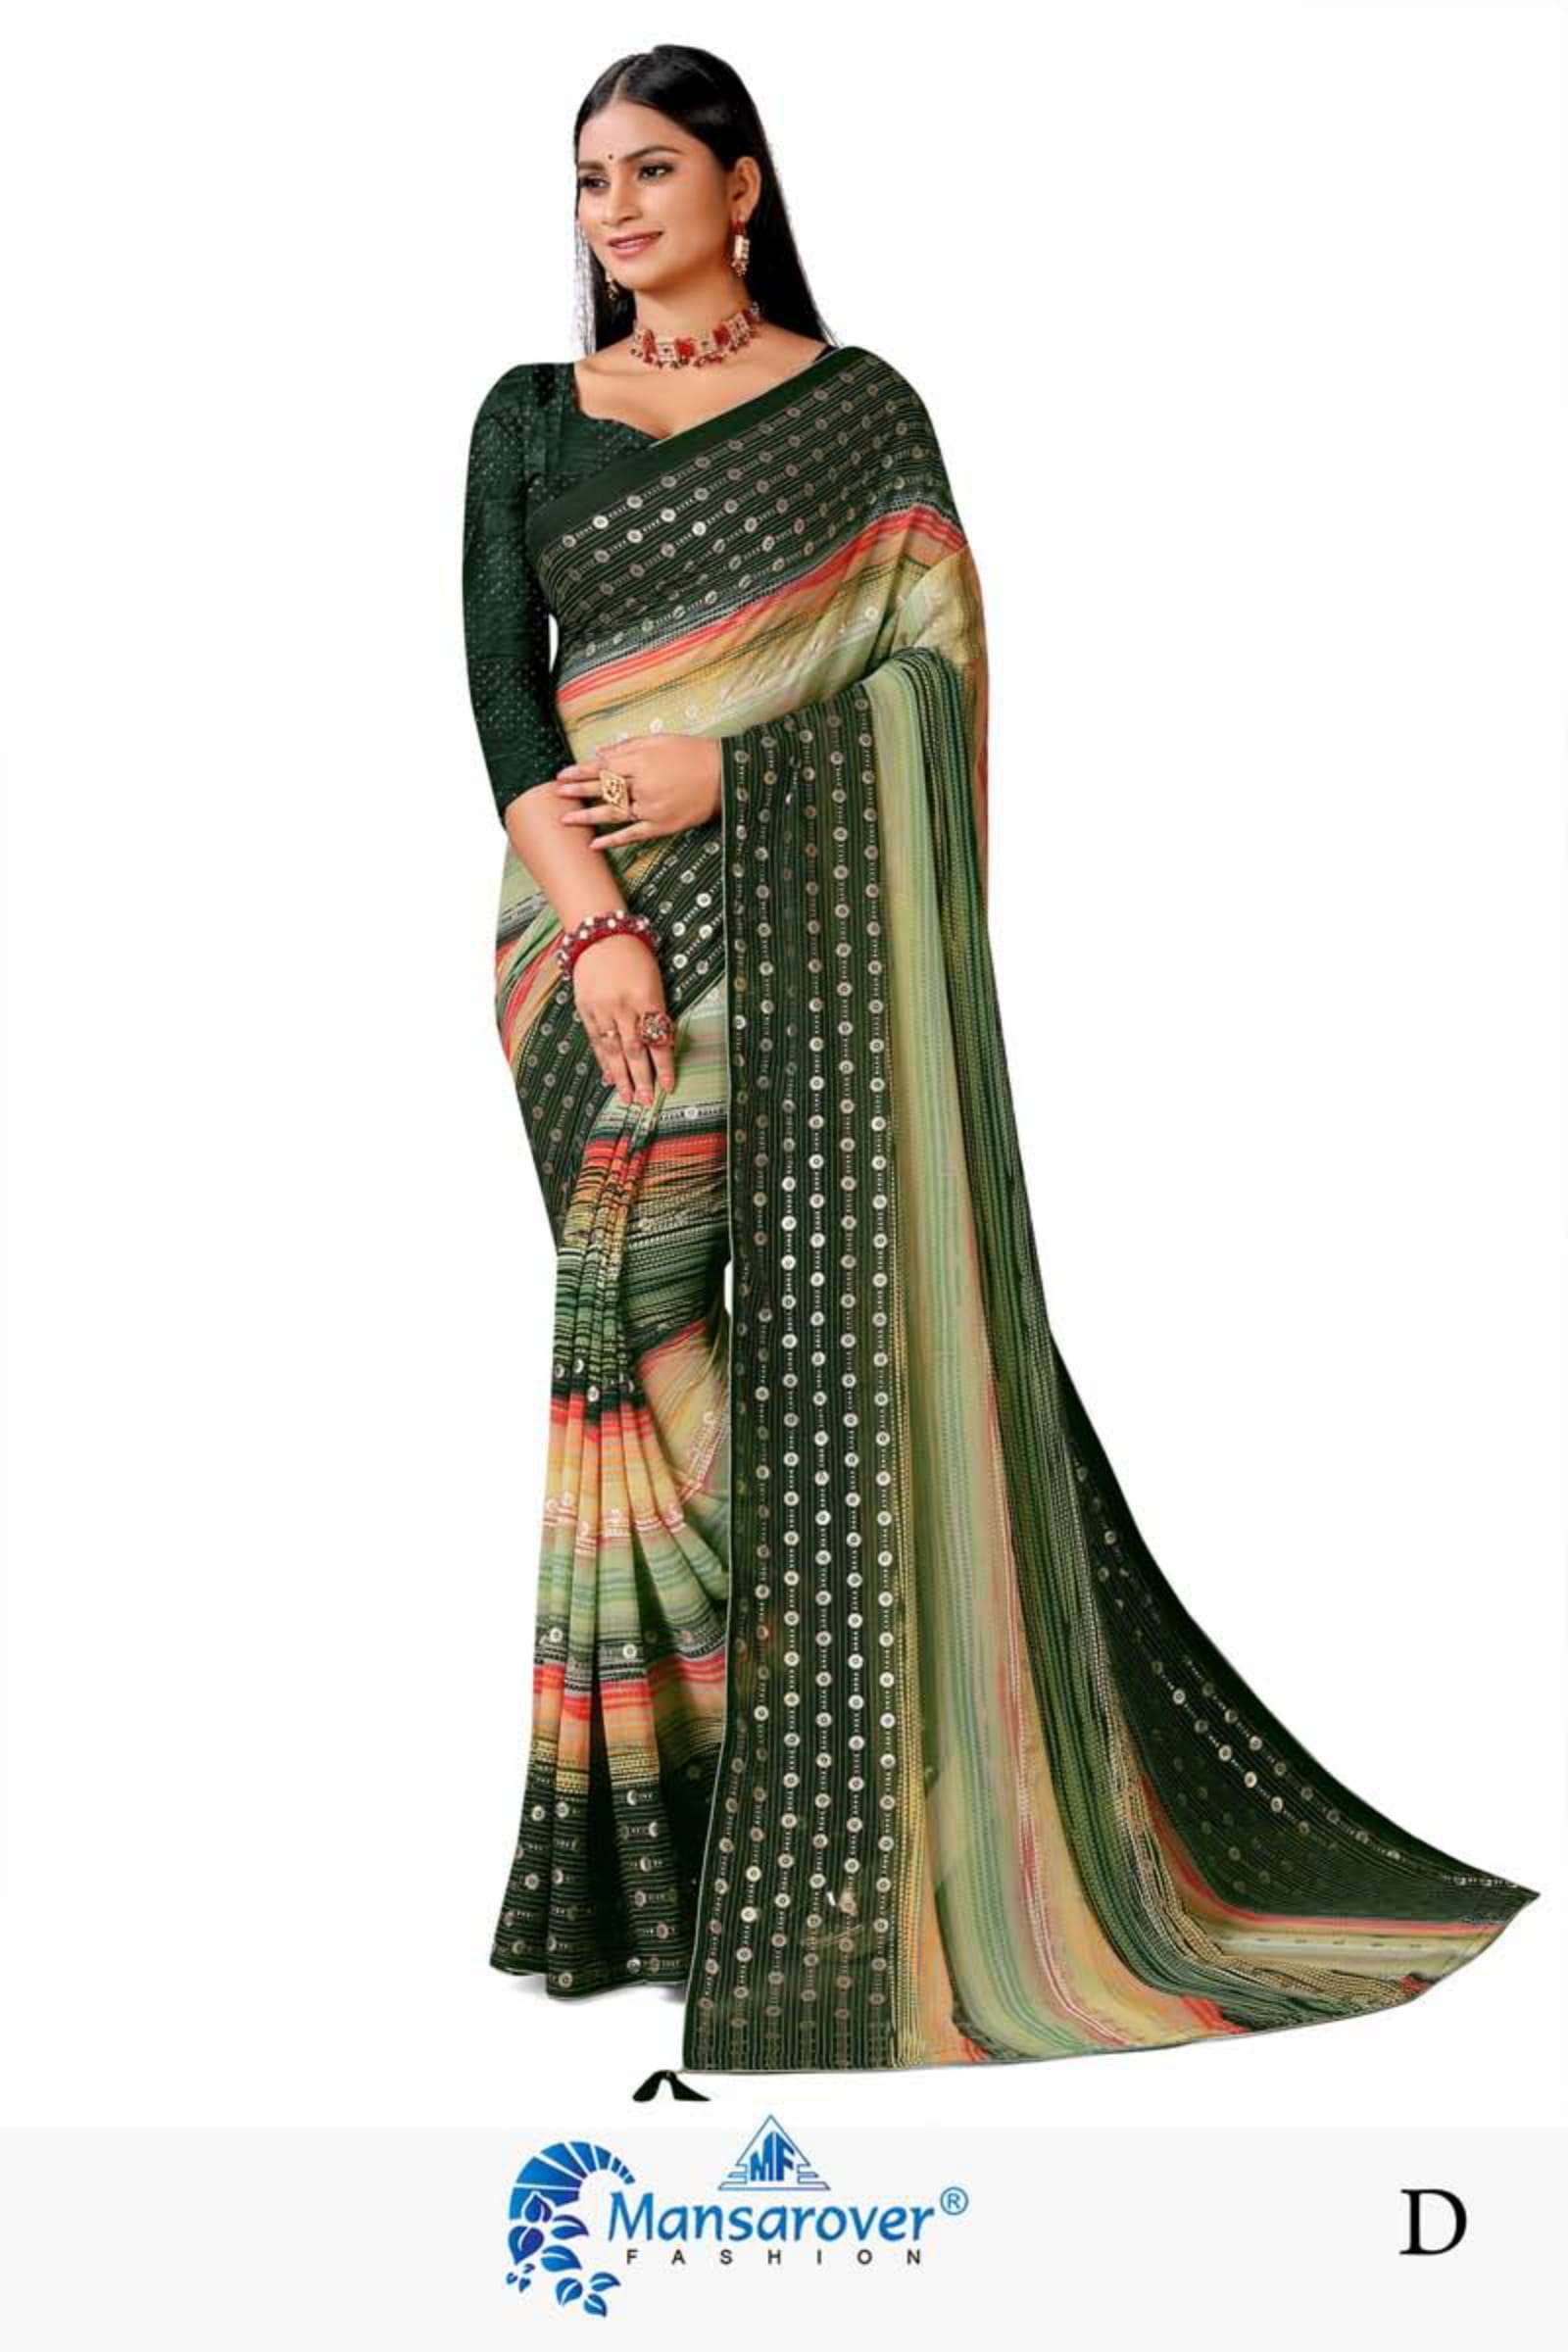 mansarover fashion kamakshi weightless saree 